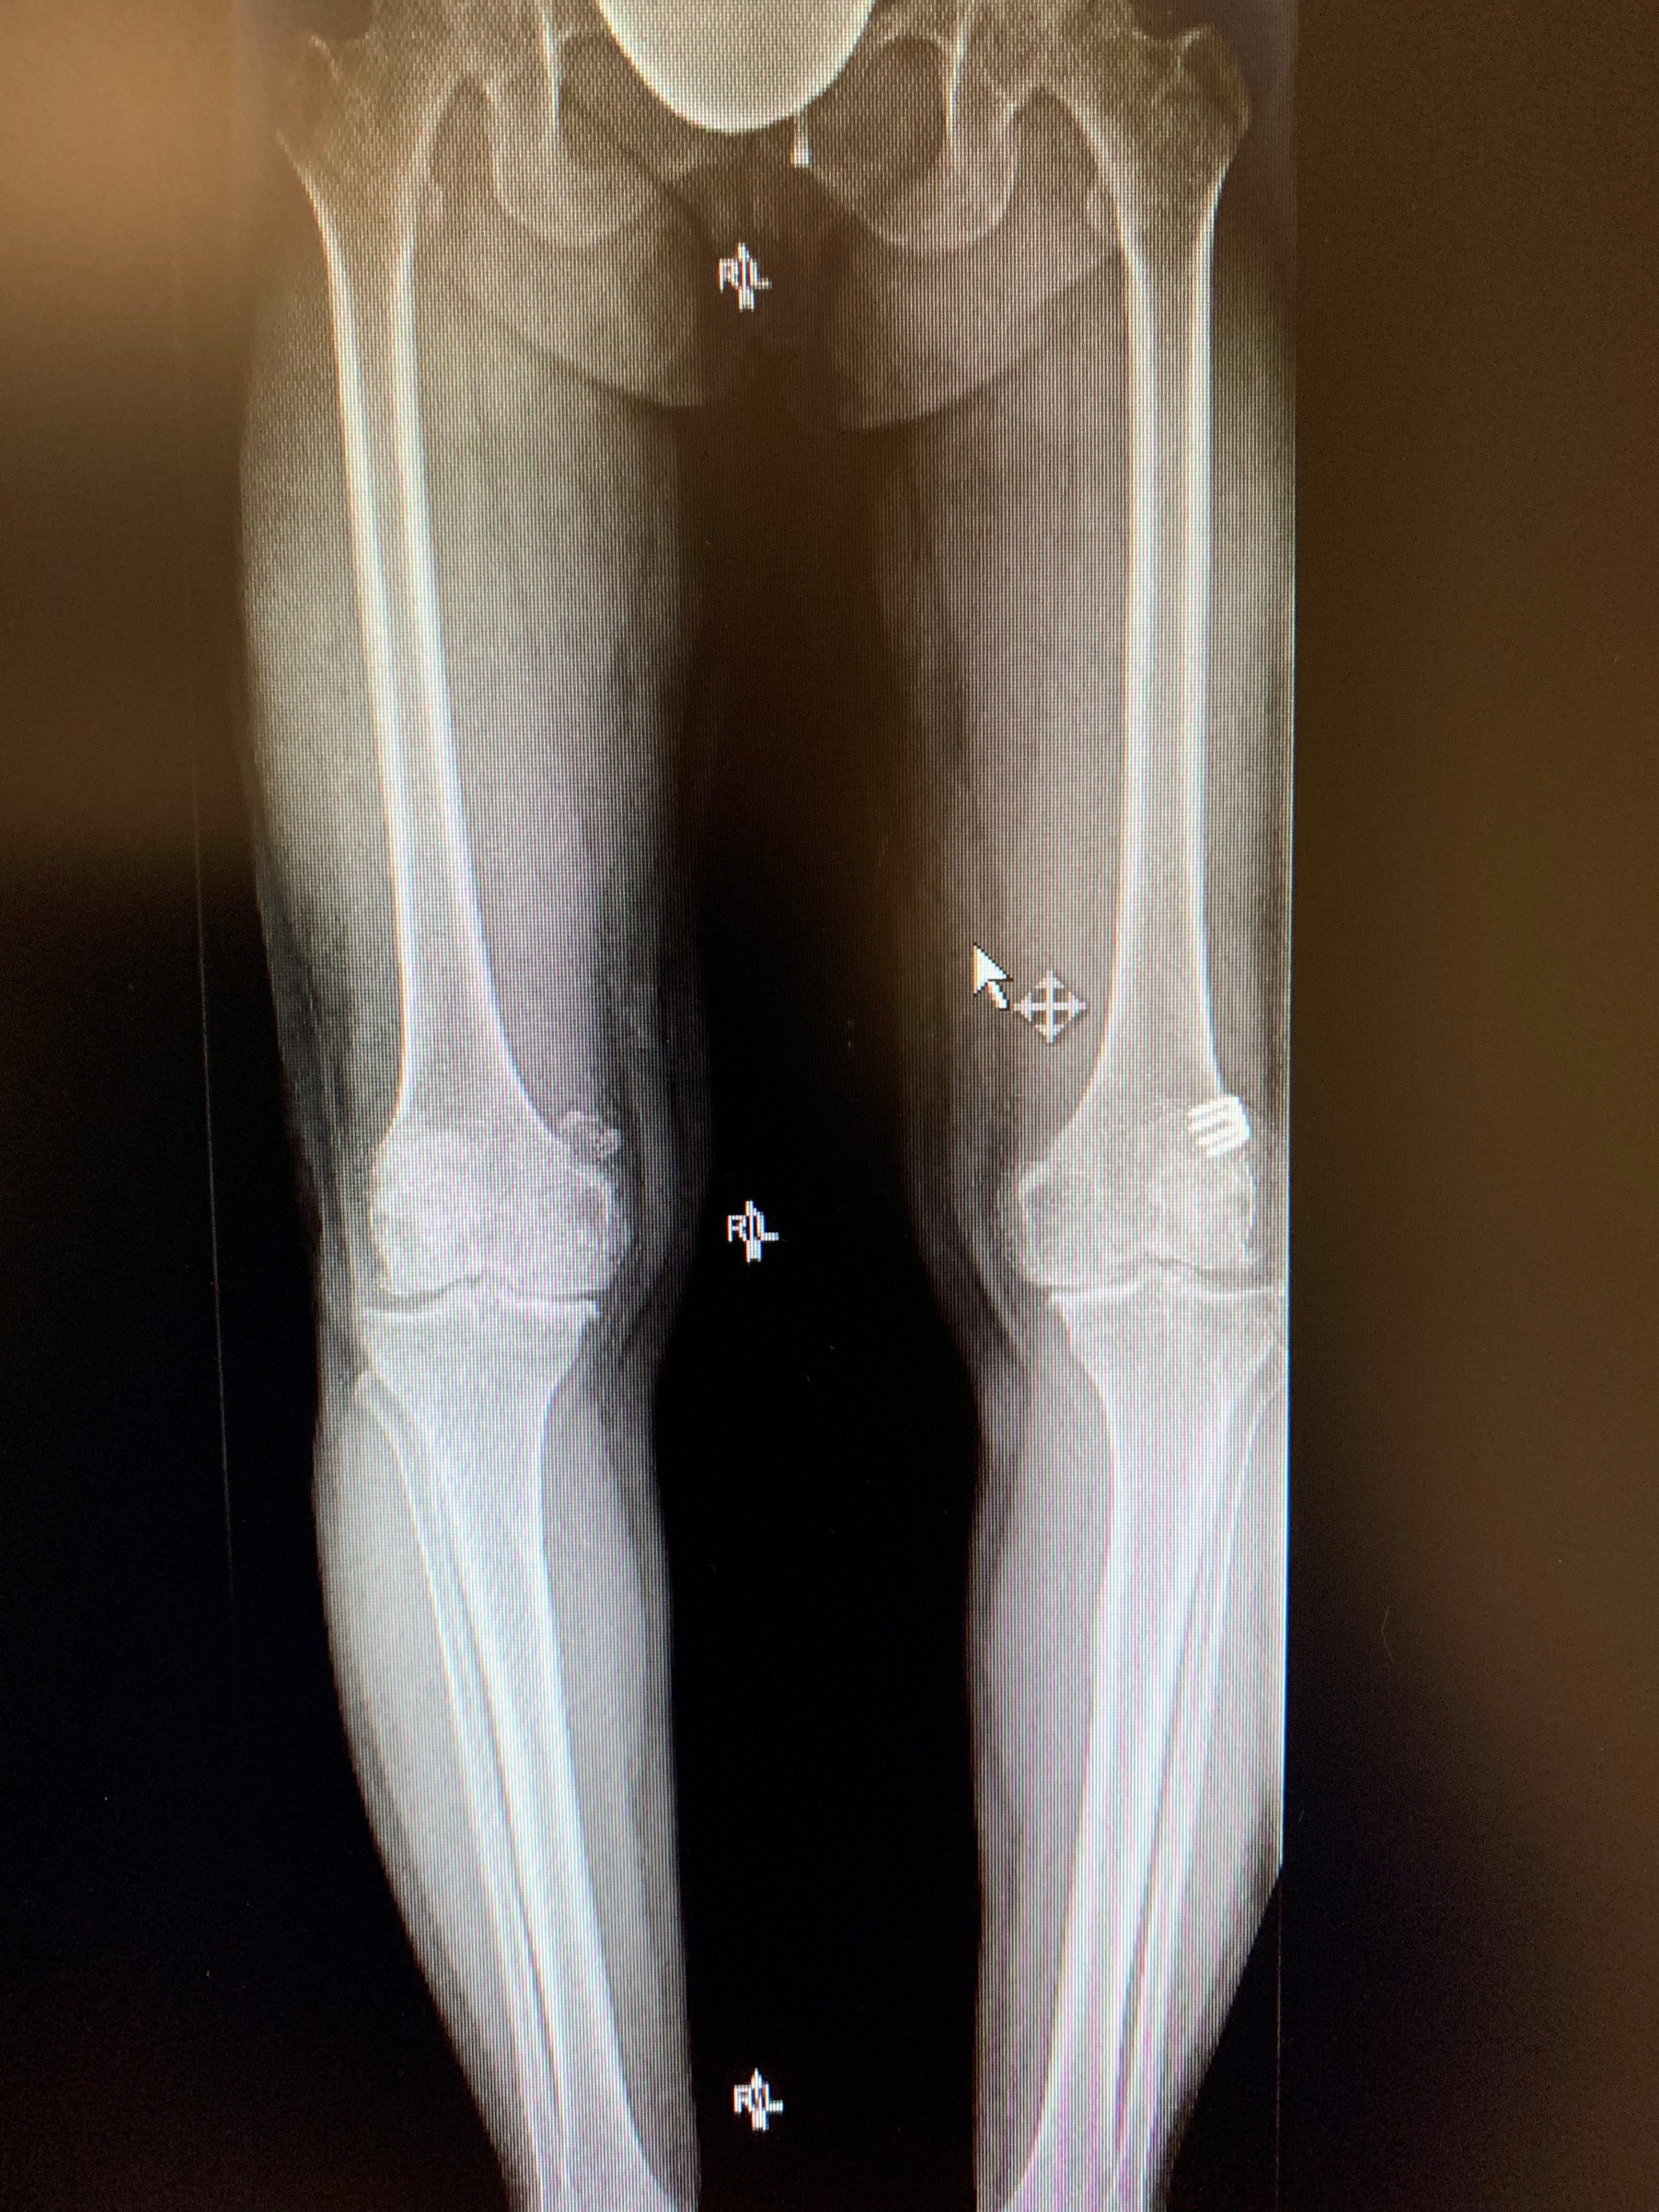 Reemplazo bilateral simultáneo de rodilla en una mujer de 54 añosa